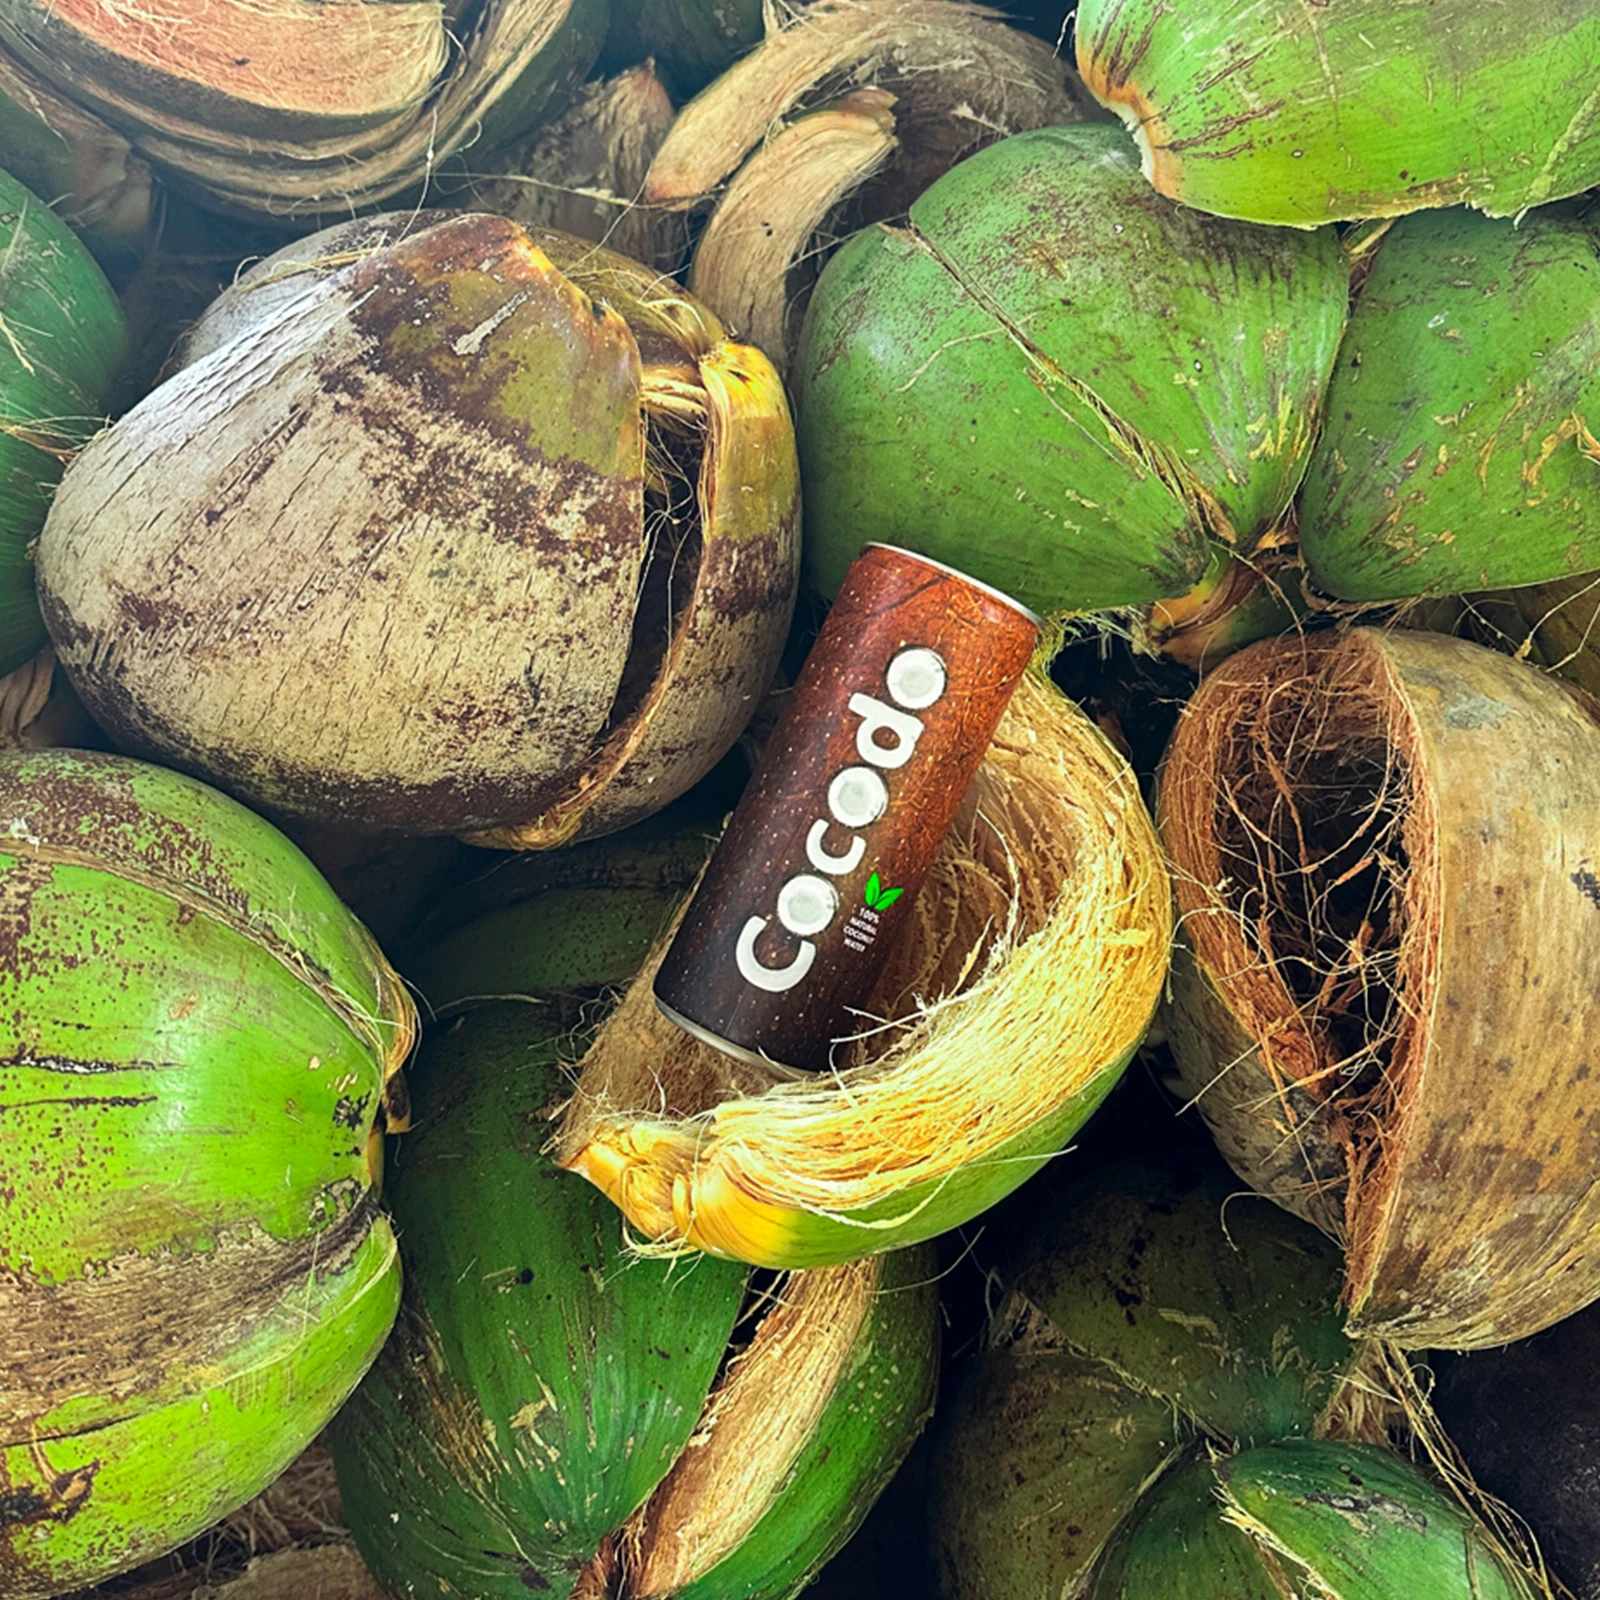 Cocodo - 100% Natürliches Kokosnusswasser | Kalorienarm, Frisch & Zusatzstofffrei 5